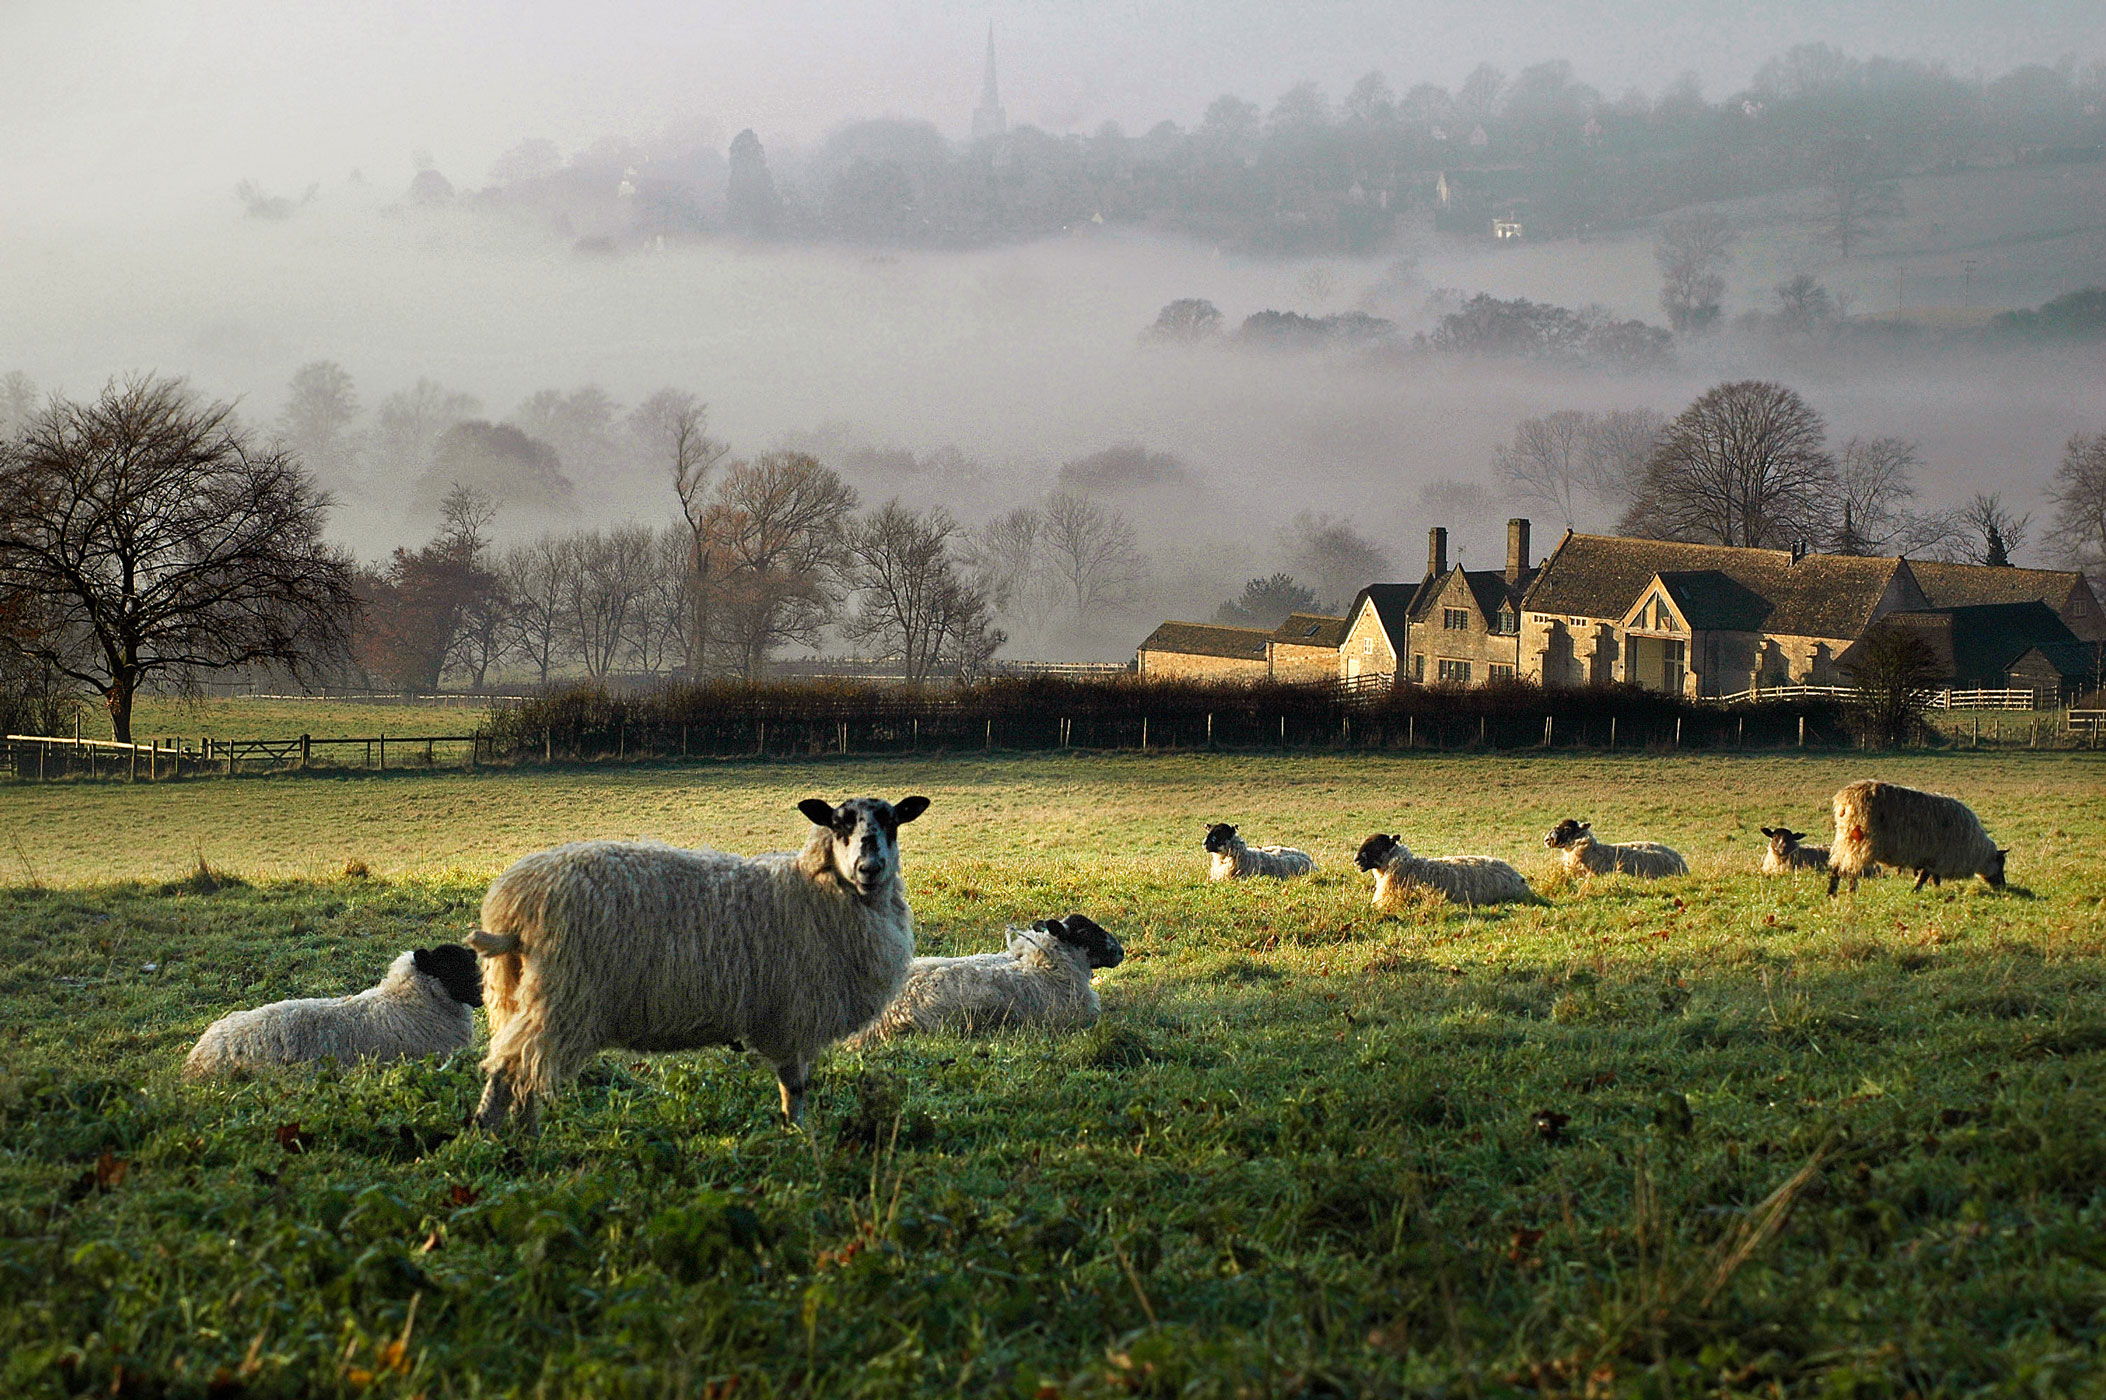 Countryside android. Котсуолдс Англия ферма. Сельская местность в Англии Котсуолд. Йоркшир Англия ферма. Котсуолдс Англия овцы.